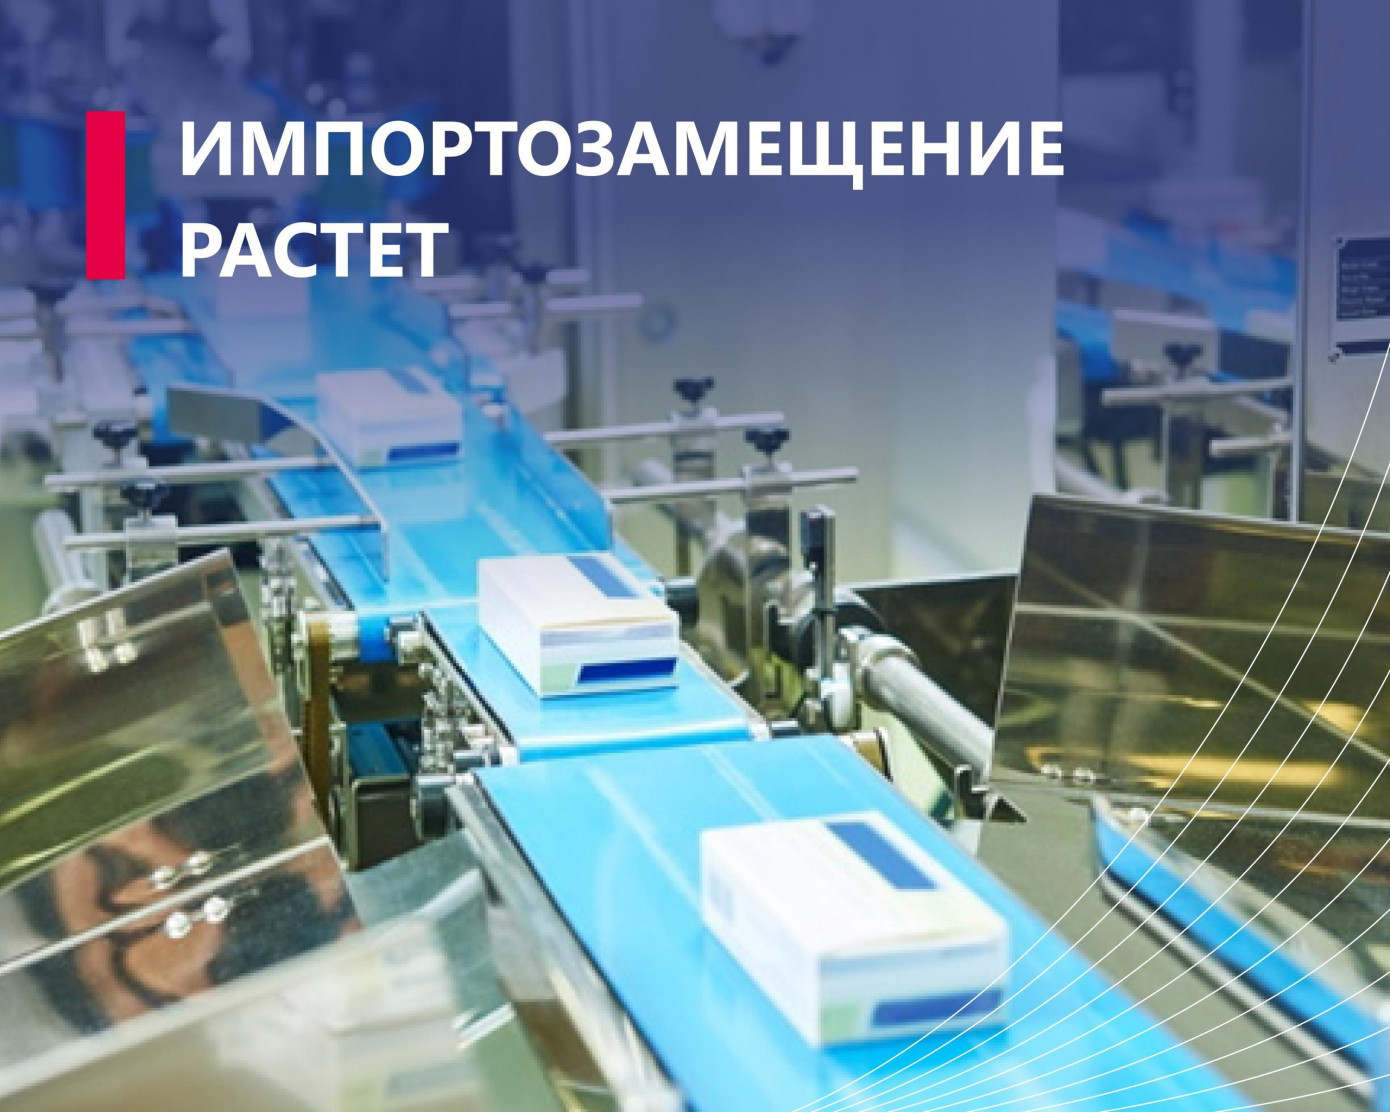 Компания «Премиум стандарт» завершила модернизацию производства упаковочной продукции